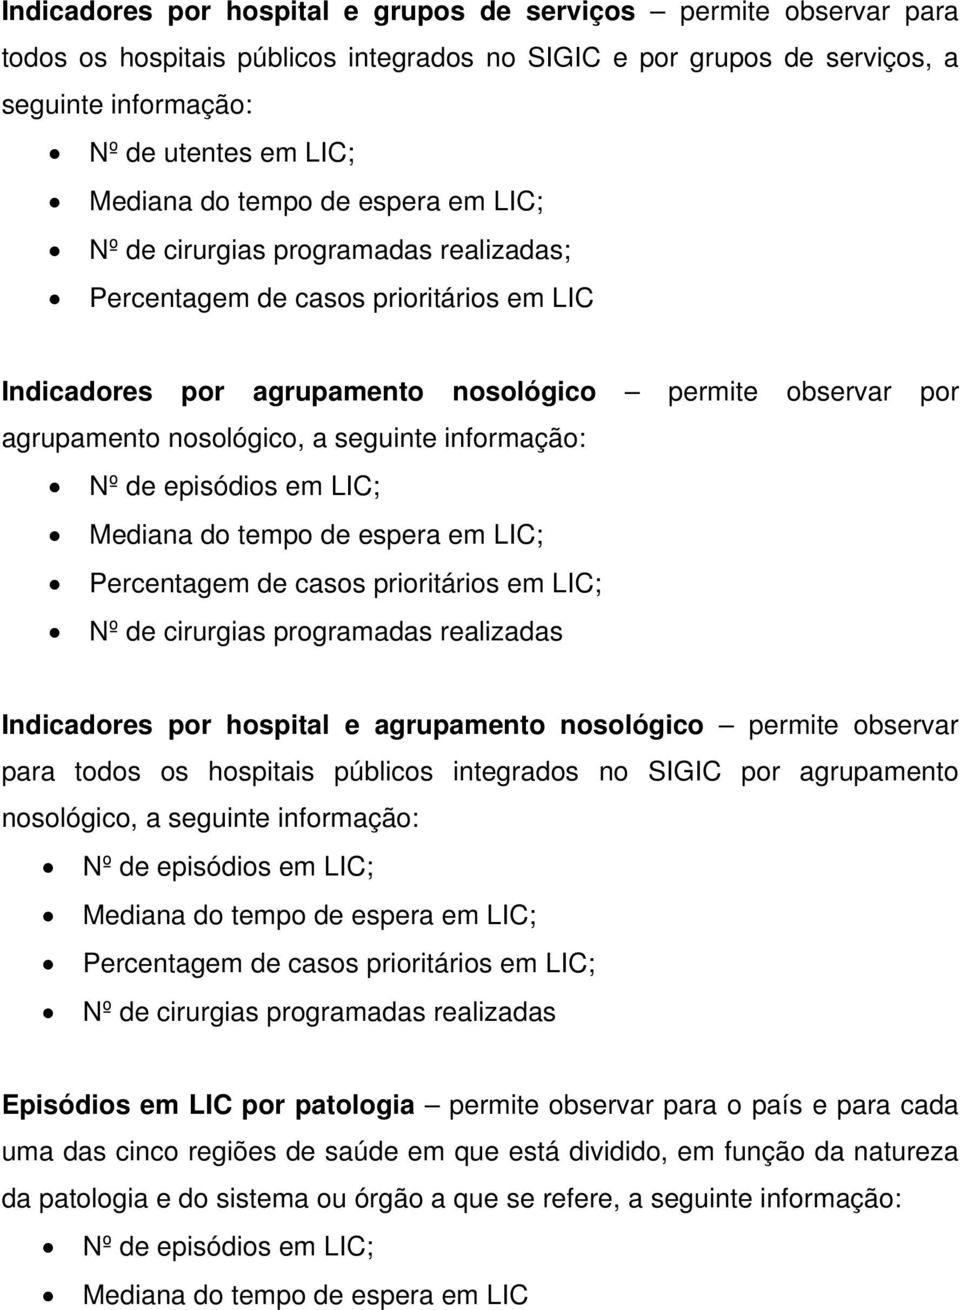 casos prioritários em LIC; Nº de cirurgias programadas realizadas Indicadores por hospital e agrupamento nosológico permite observar para todos os hospitais públicos integrados no SIGIC por